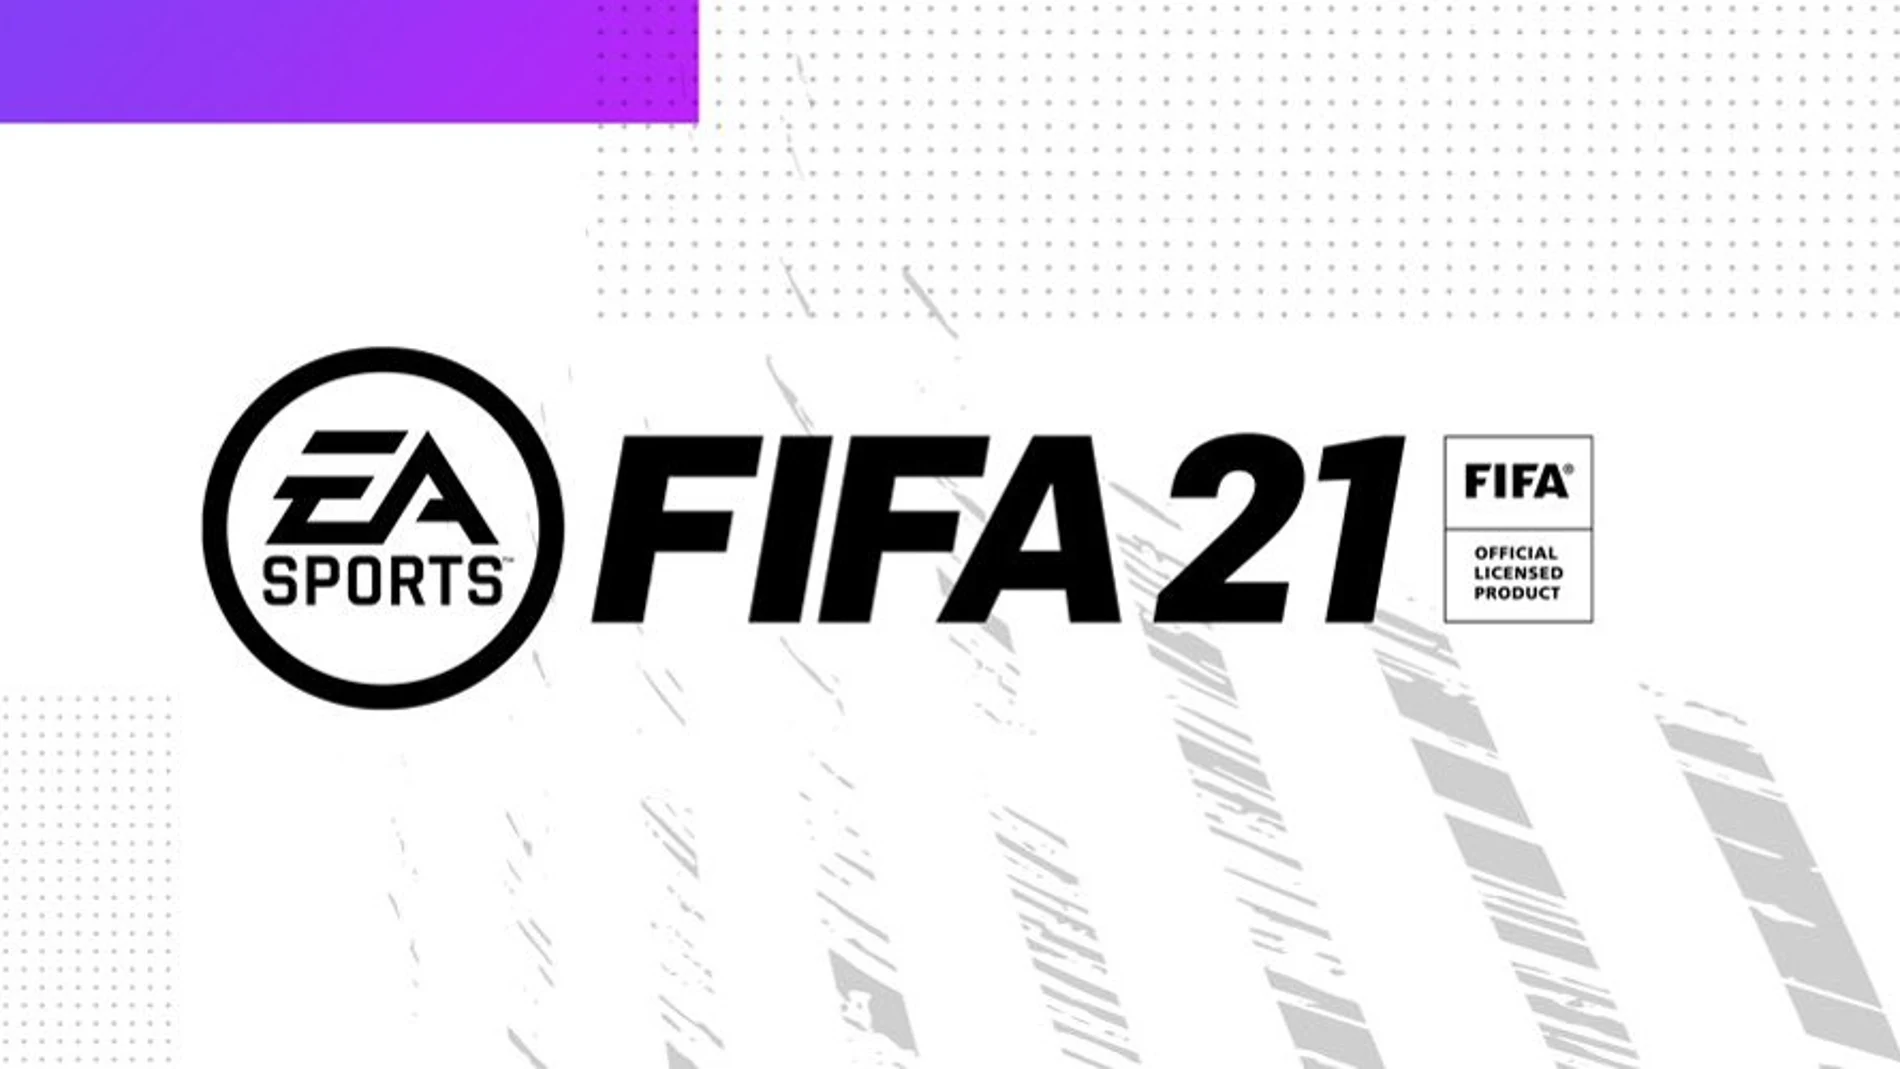 Beta cerrada y novedades de FIFA 21